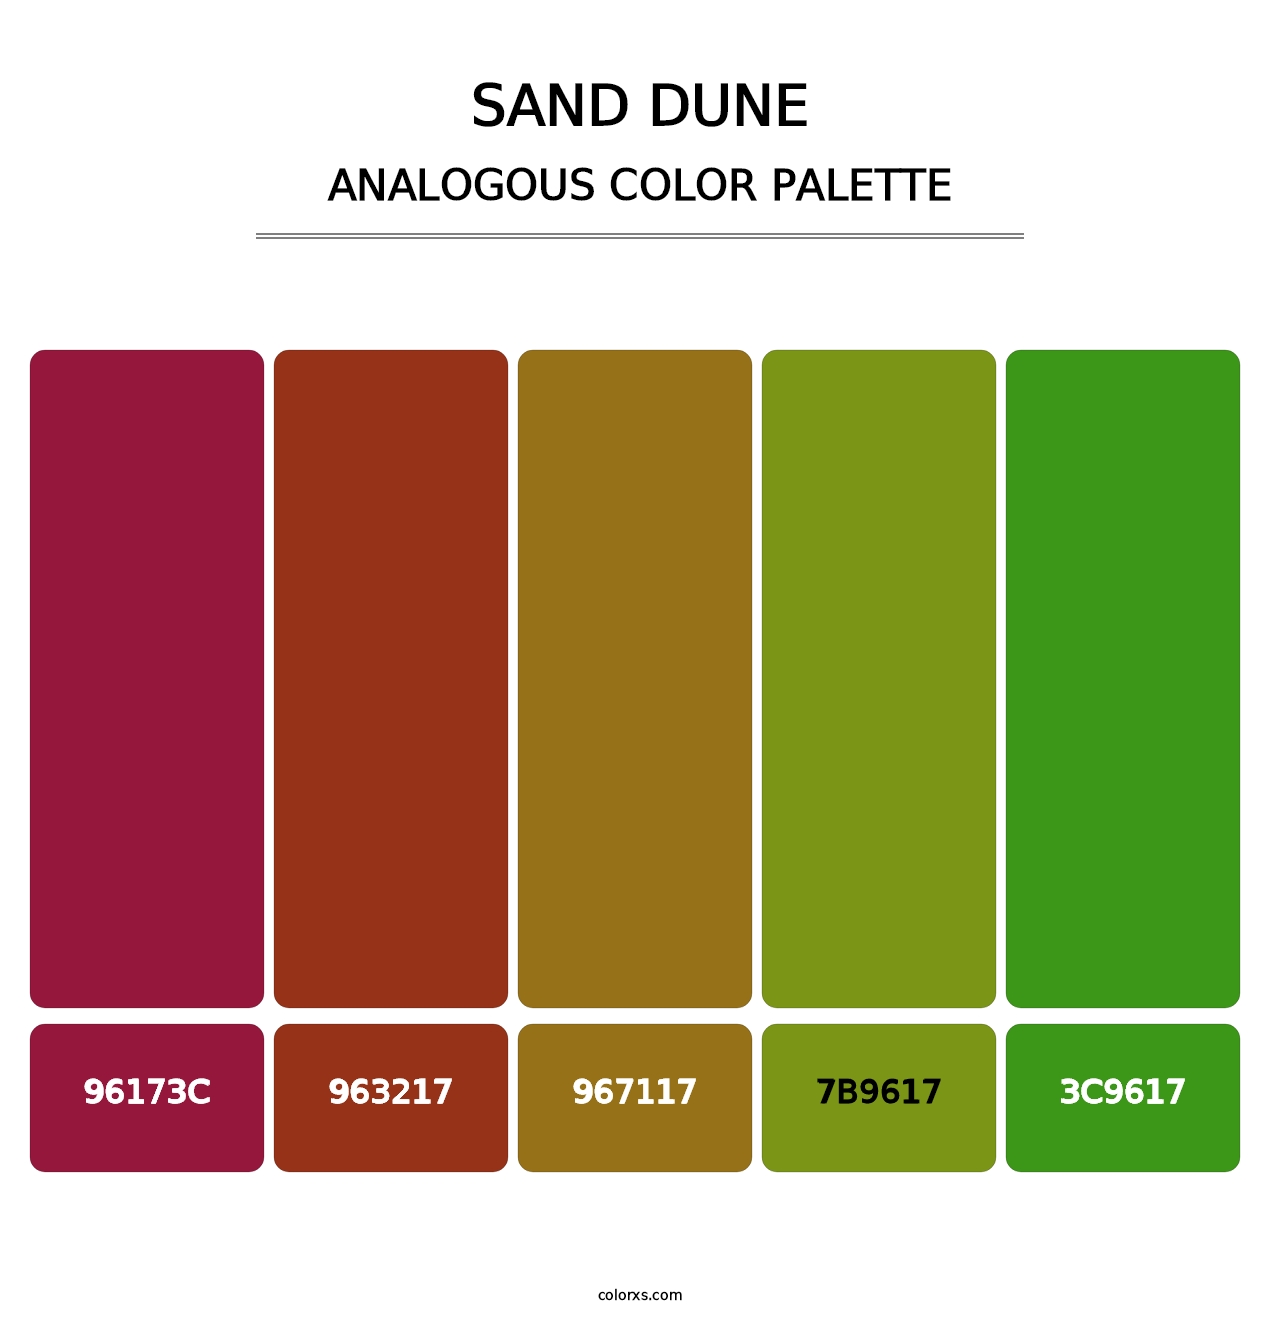 Sand Dune - Analogous Color Palette